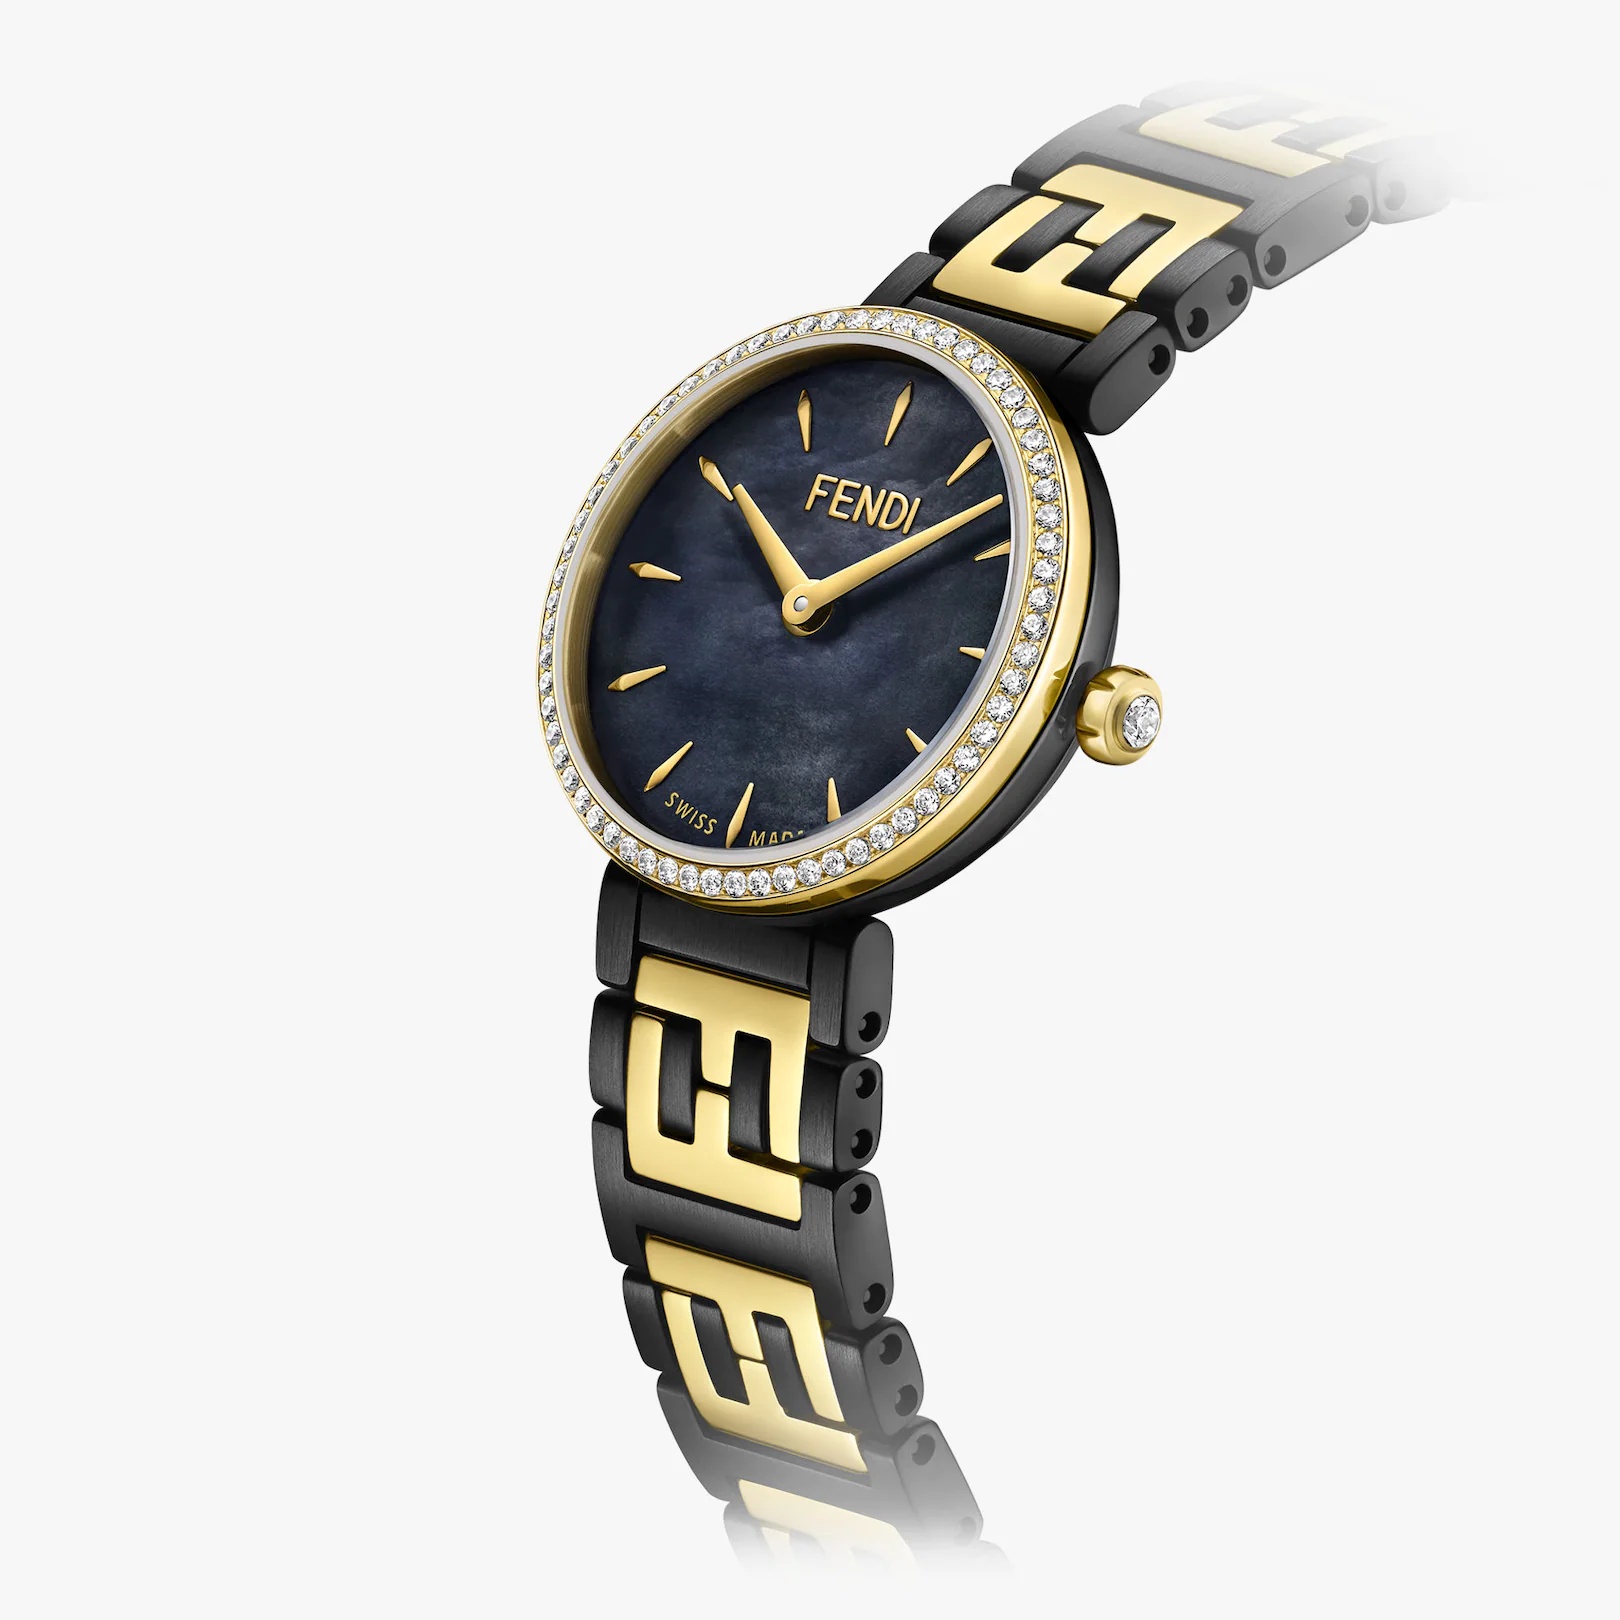 19 MM - Watch with FF logo bracelet - 3